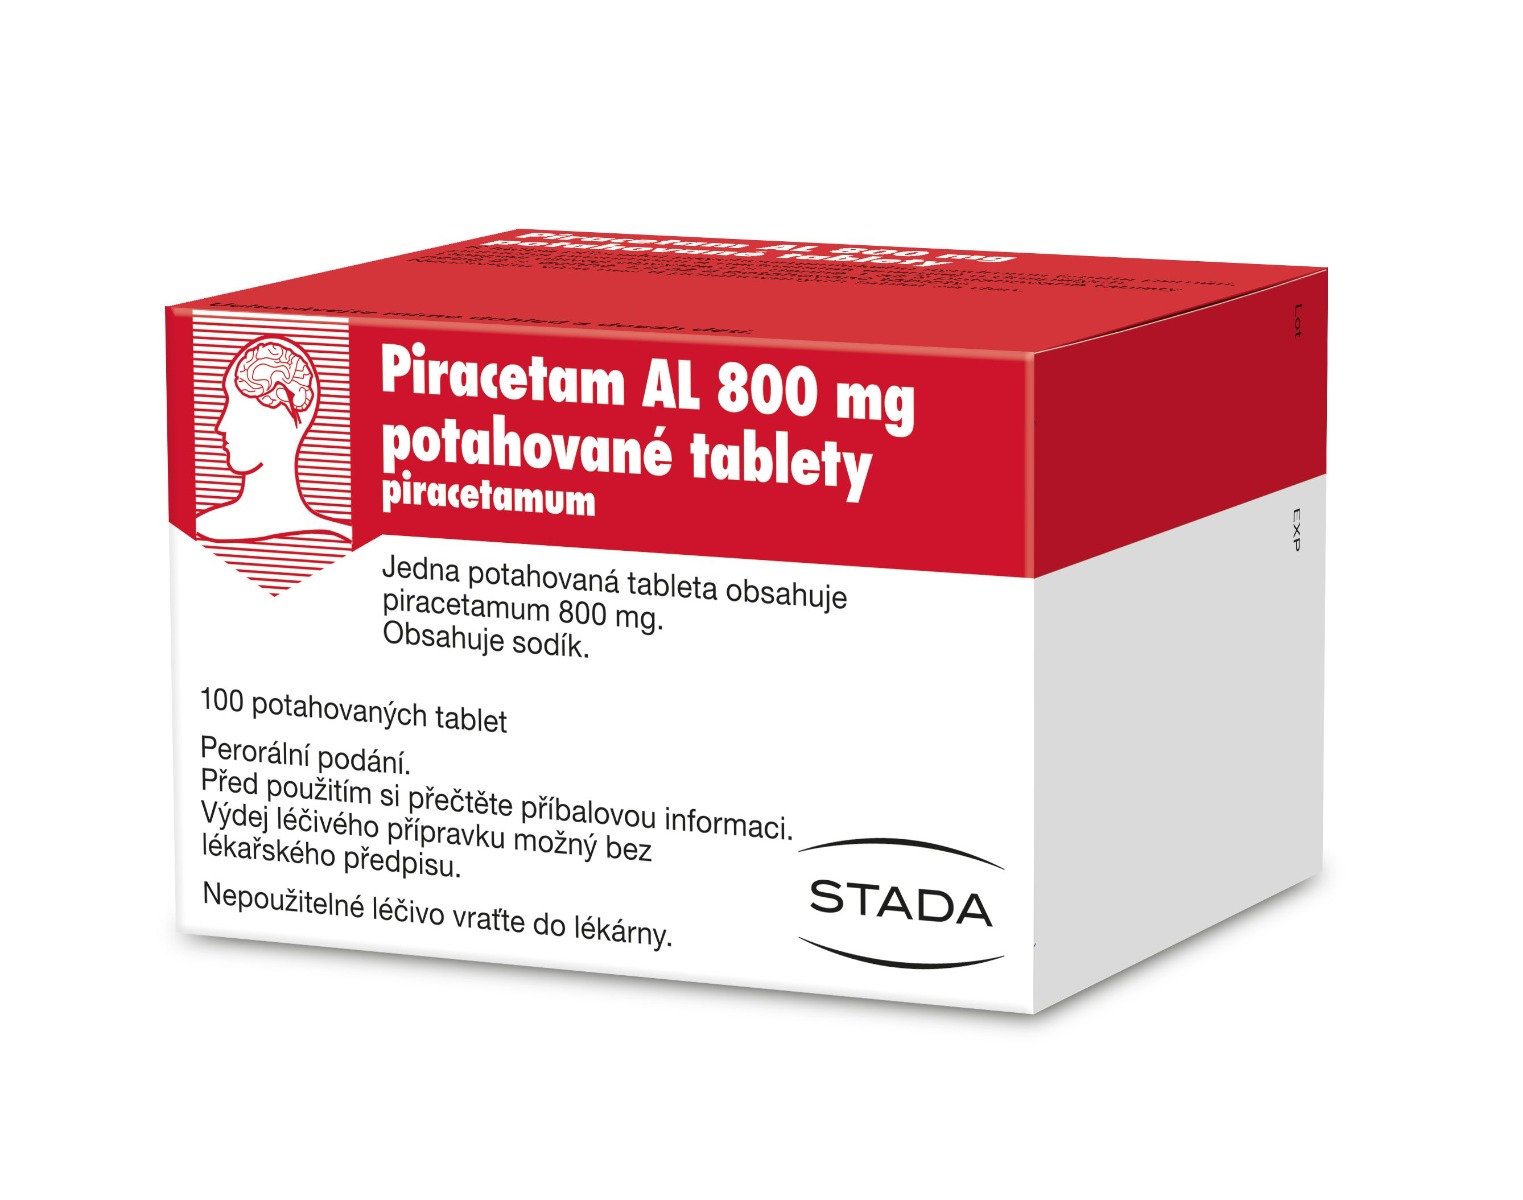 Piracetam AL 800 mg 100 potahovaných tablet Piracetam